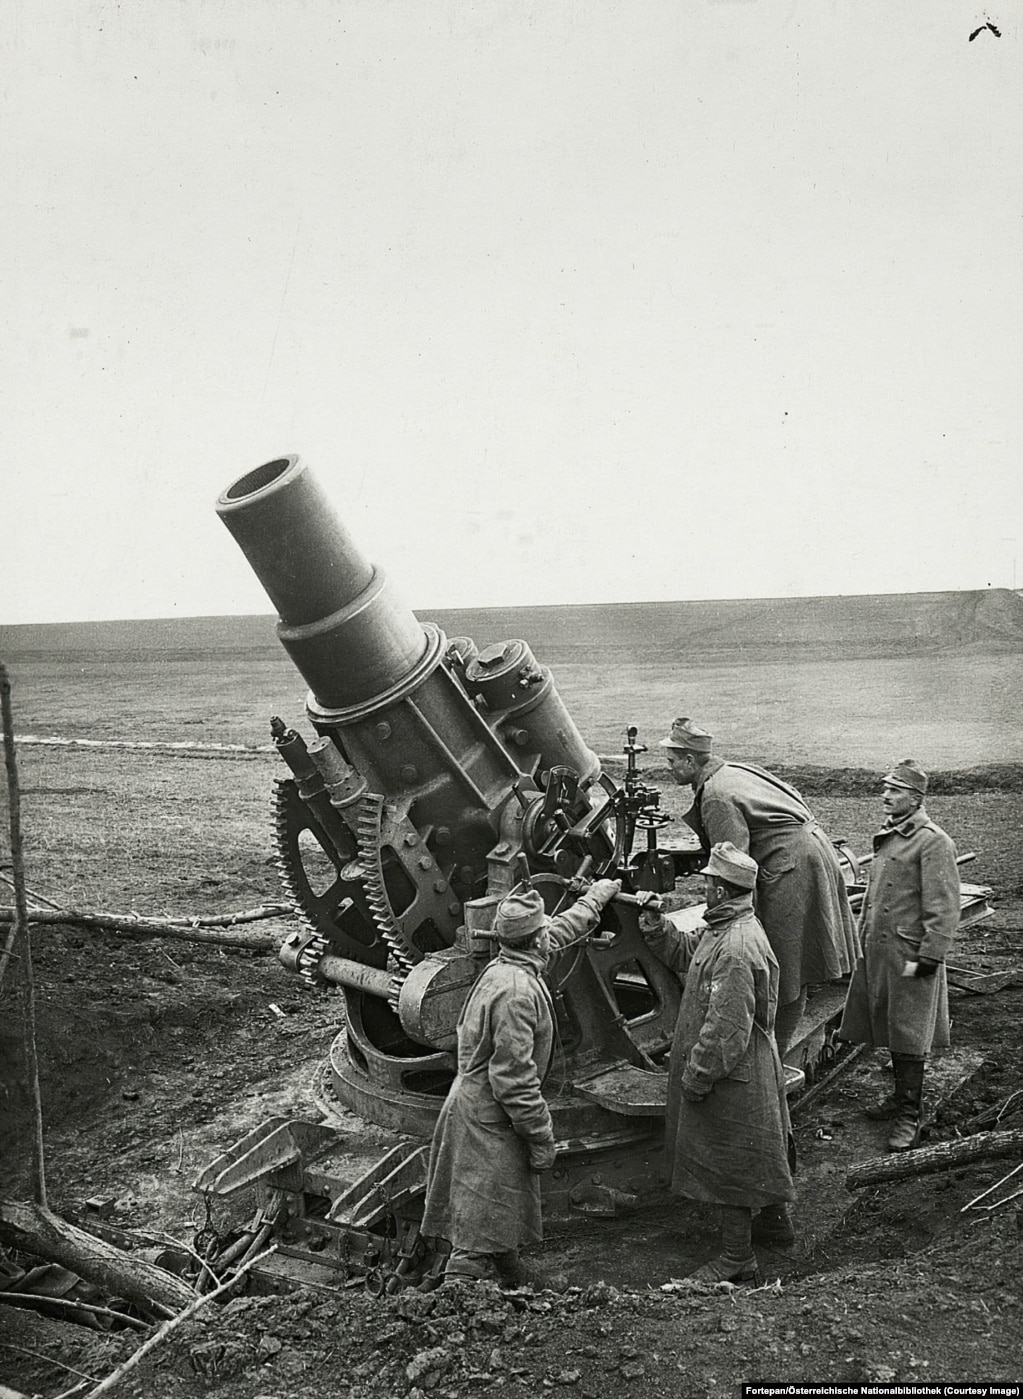 Un "mortaio d'assedio" Skoda  operato dalle forze austro-ungariche da qualche parte nell'odierna Ucraina nel 1915. Il mortaio lanciava proiettili del peso di 384 chilogrammi ciascuno e fu successivamente utilizzato dai nazisti nella seconda guerra mondiale. 